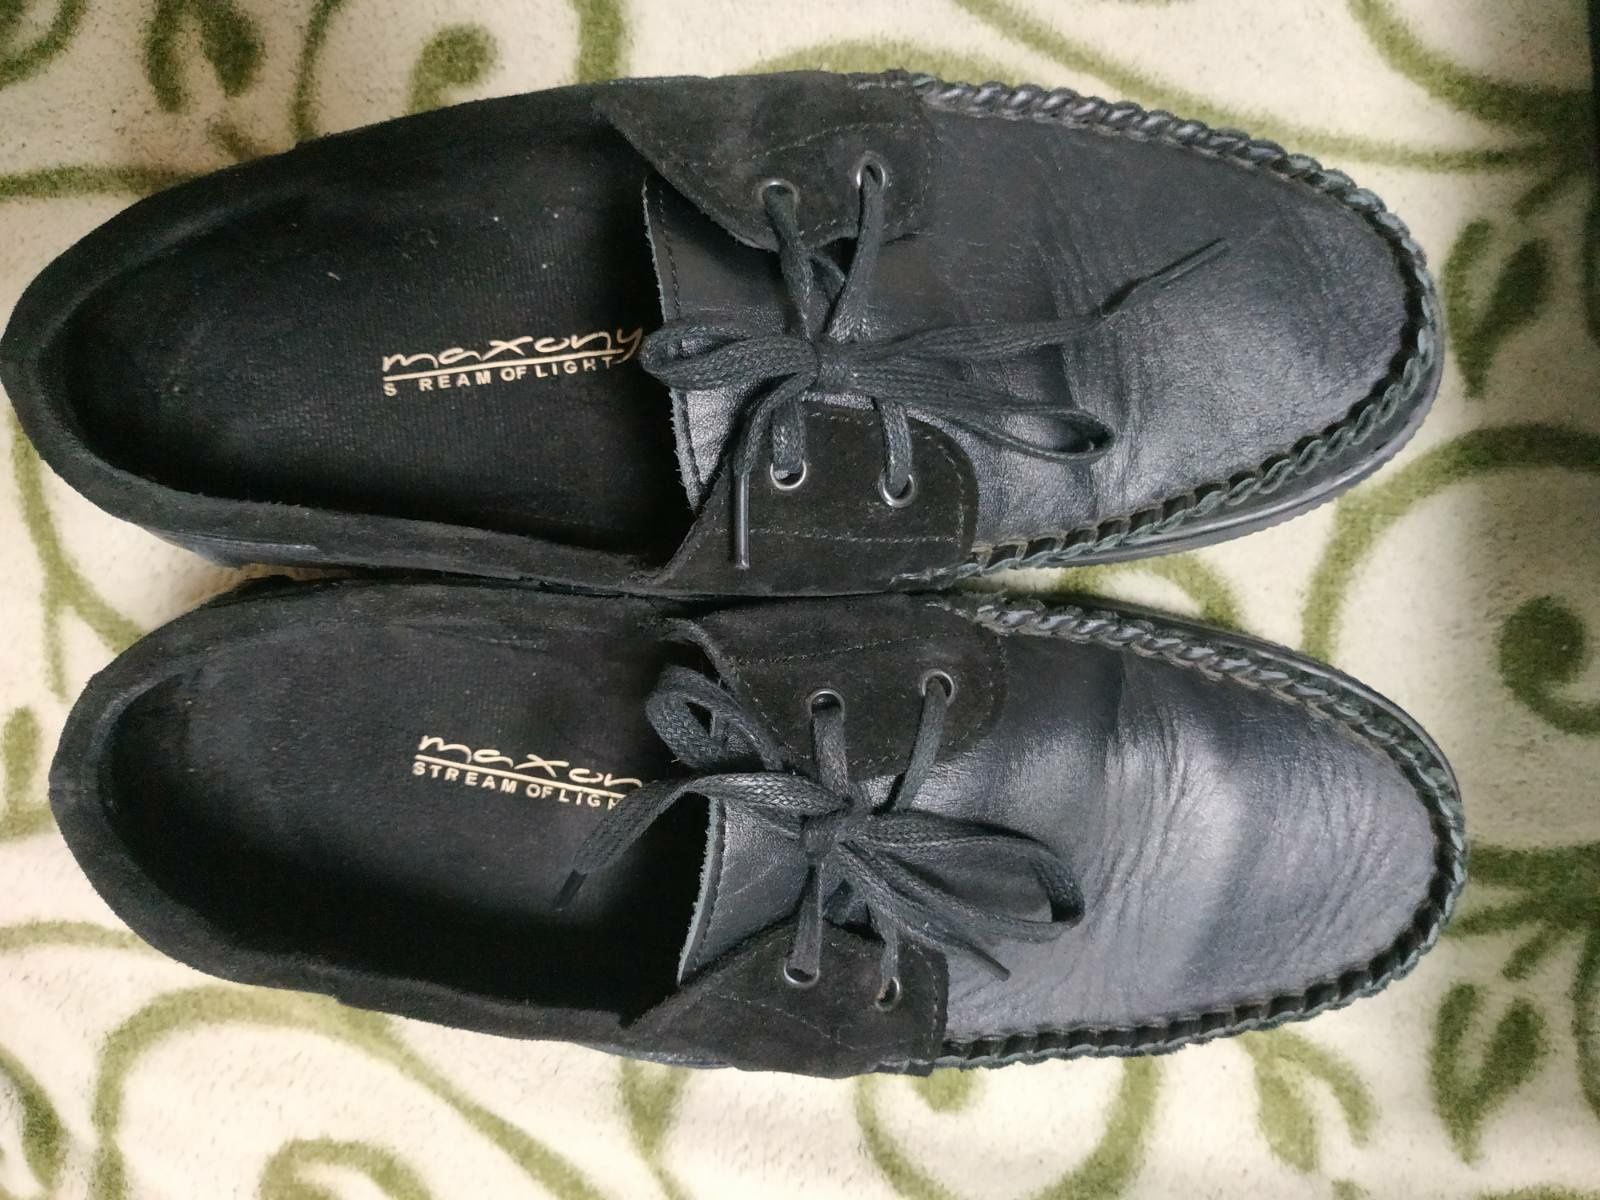 Продам бу кожаные туфли 42 размер. Фирма MAXONY одеты 2 раза.